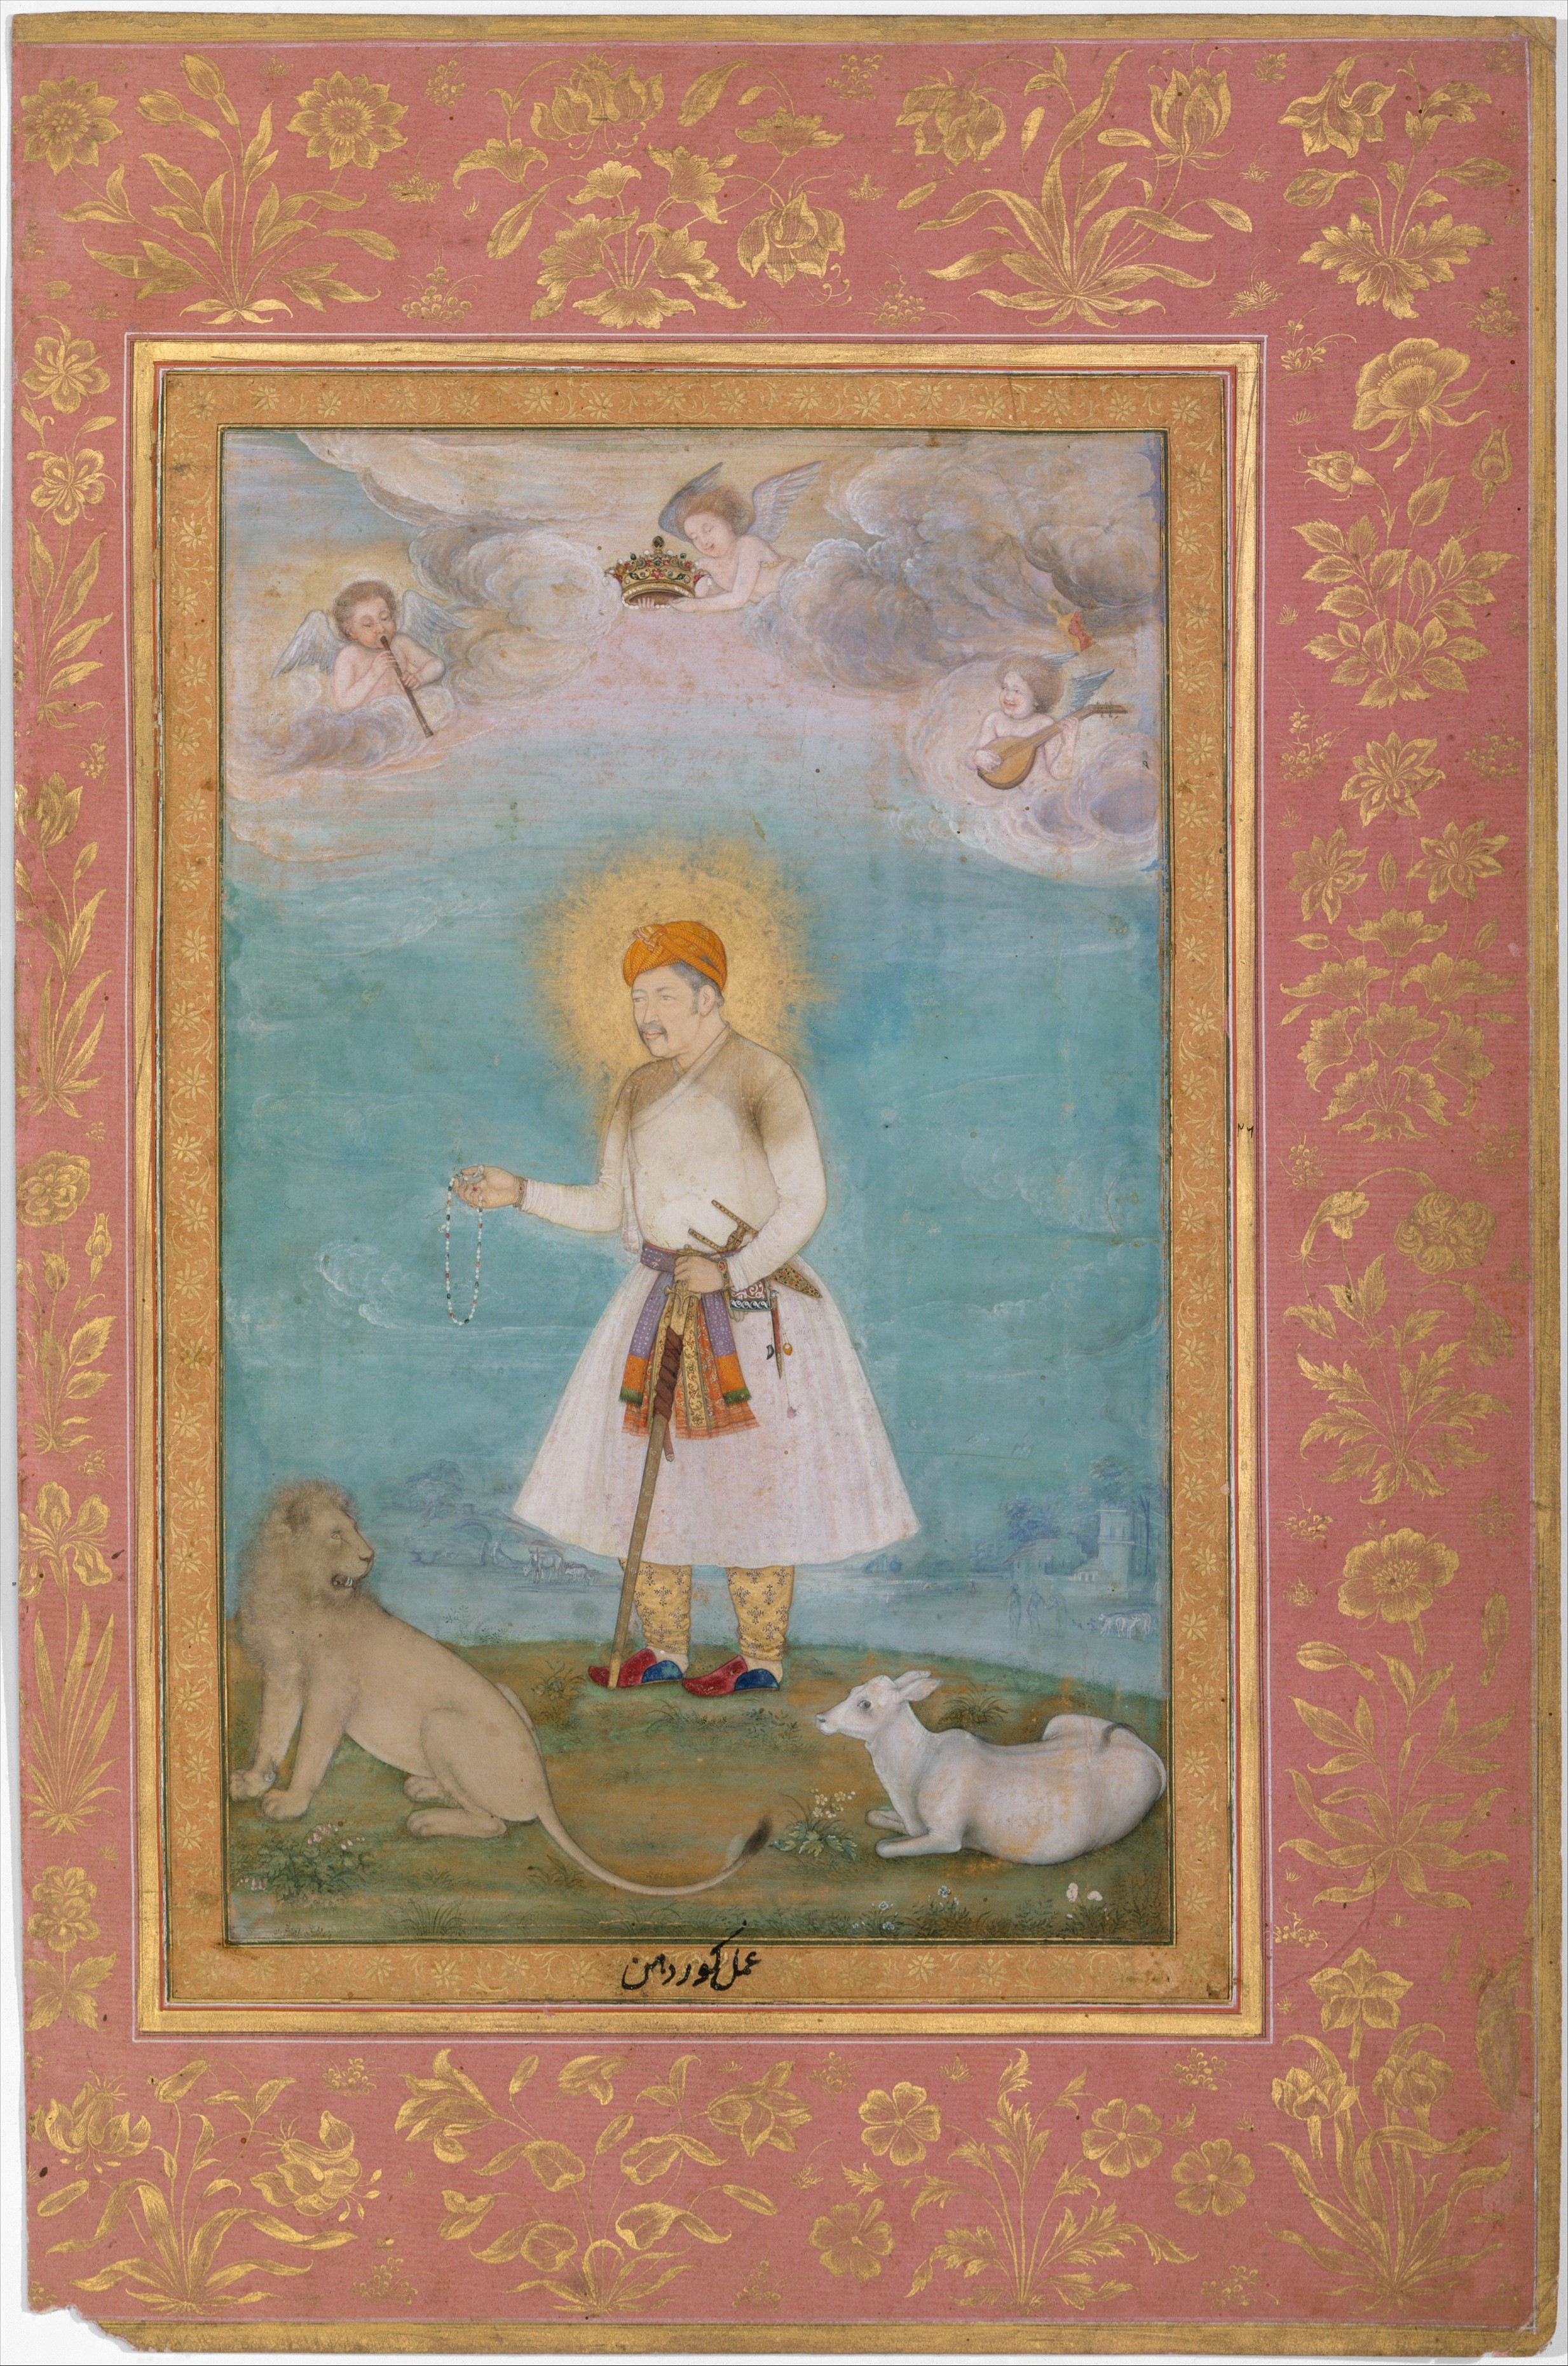 Akbar z lwem i cielęciem by  Govardhan - 1630 